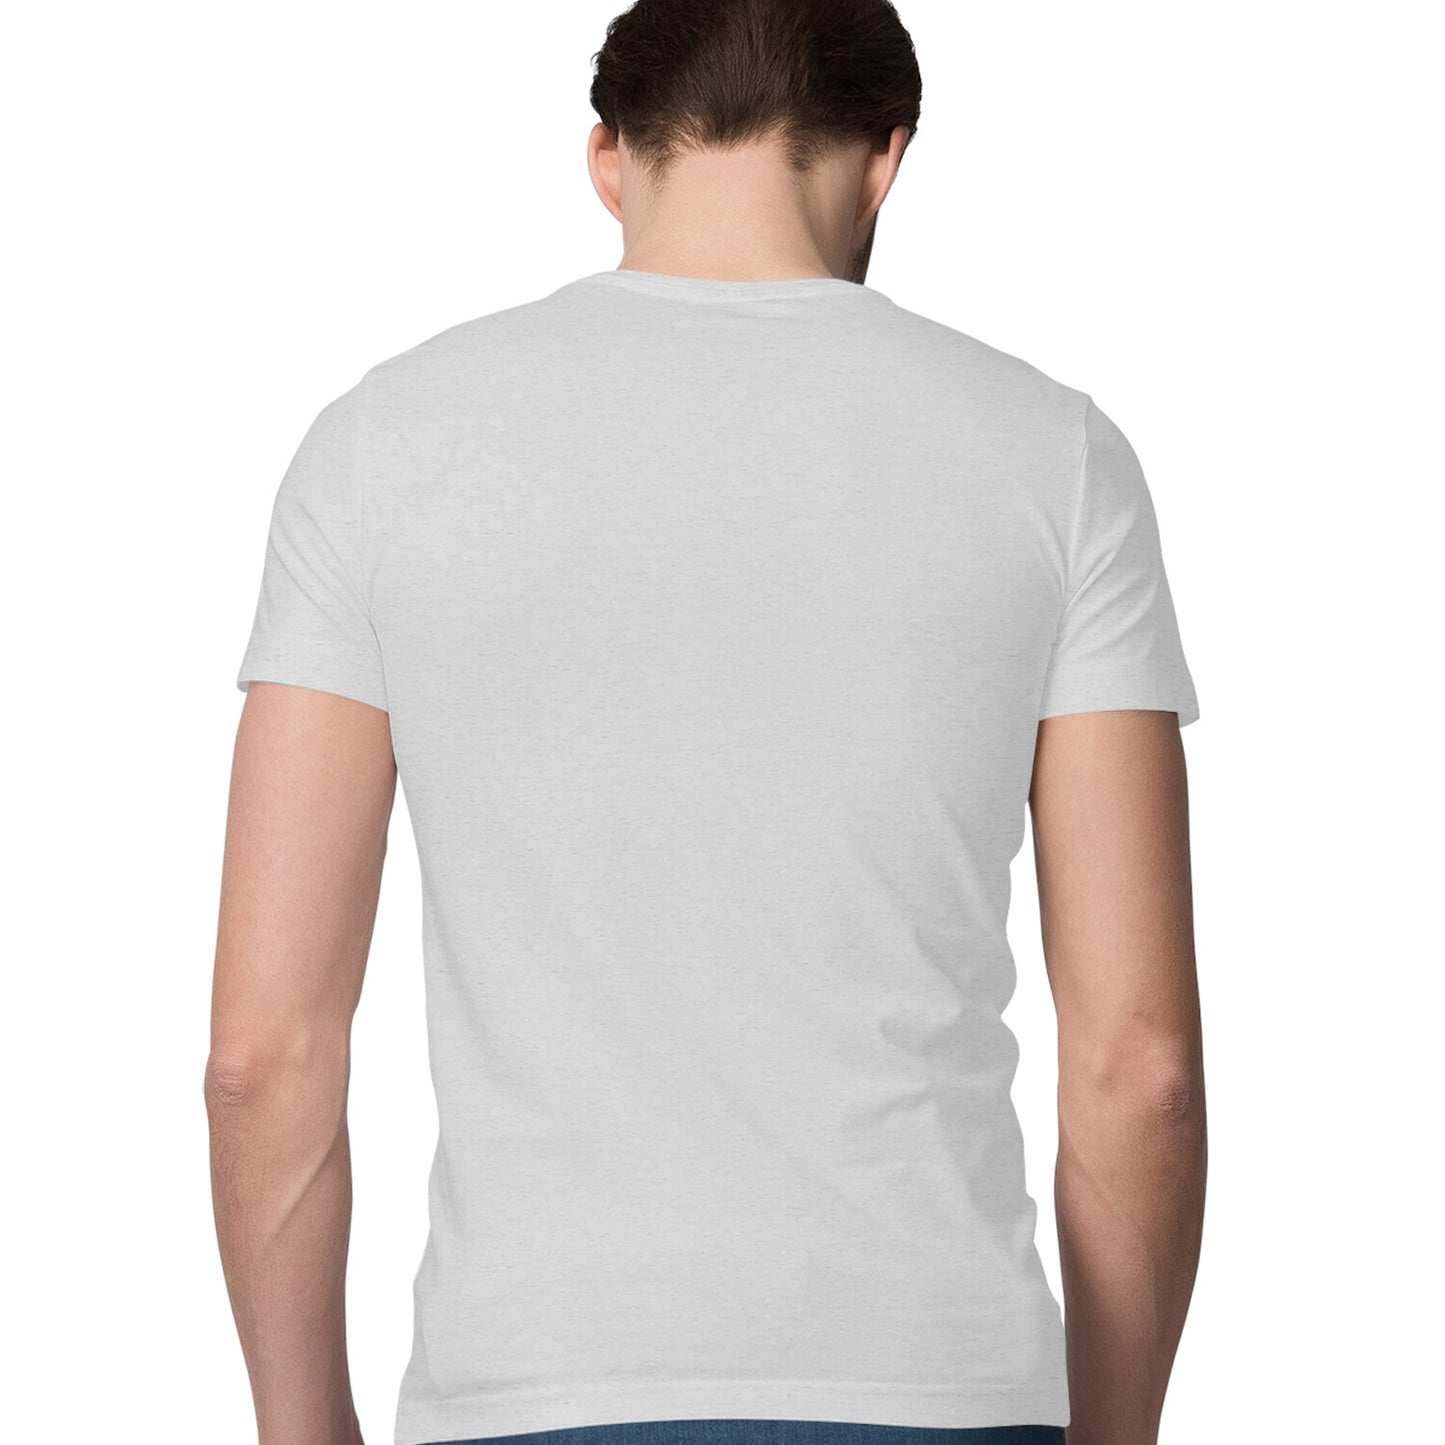 I'm Limited Edition - Sleek Design T-shirt - Men's